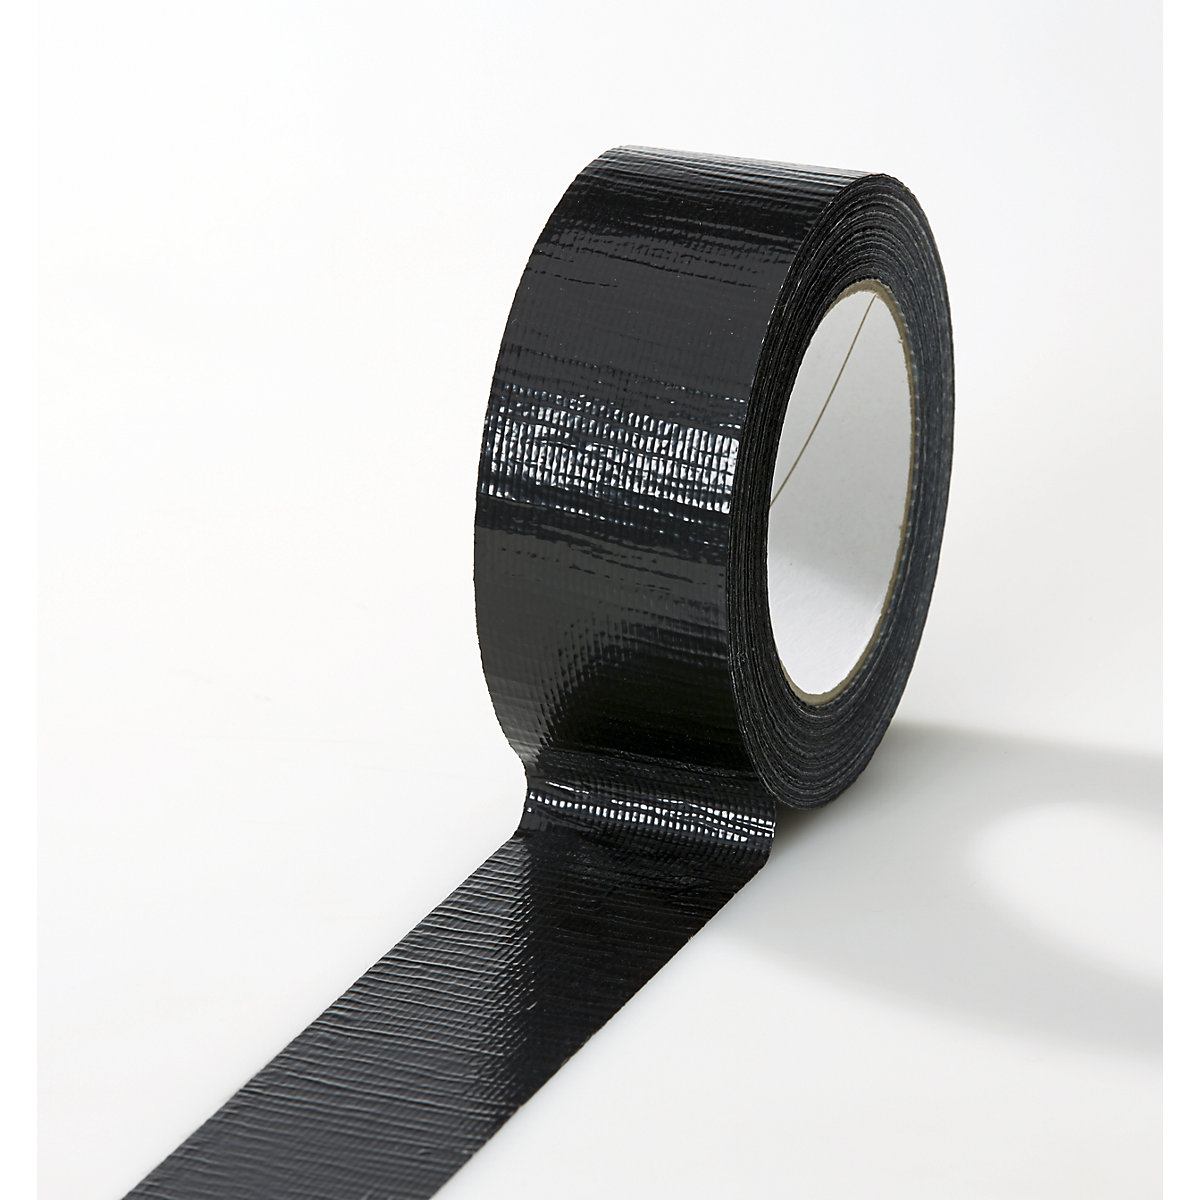 Traka od tkanine, u različitim bojama, pak. 24 role, u crnoj boji, širina trake 38 mm